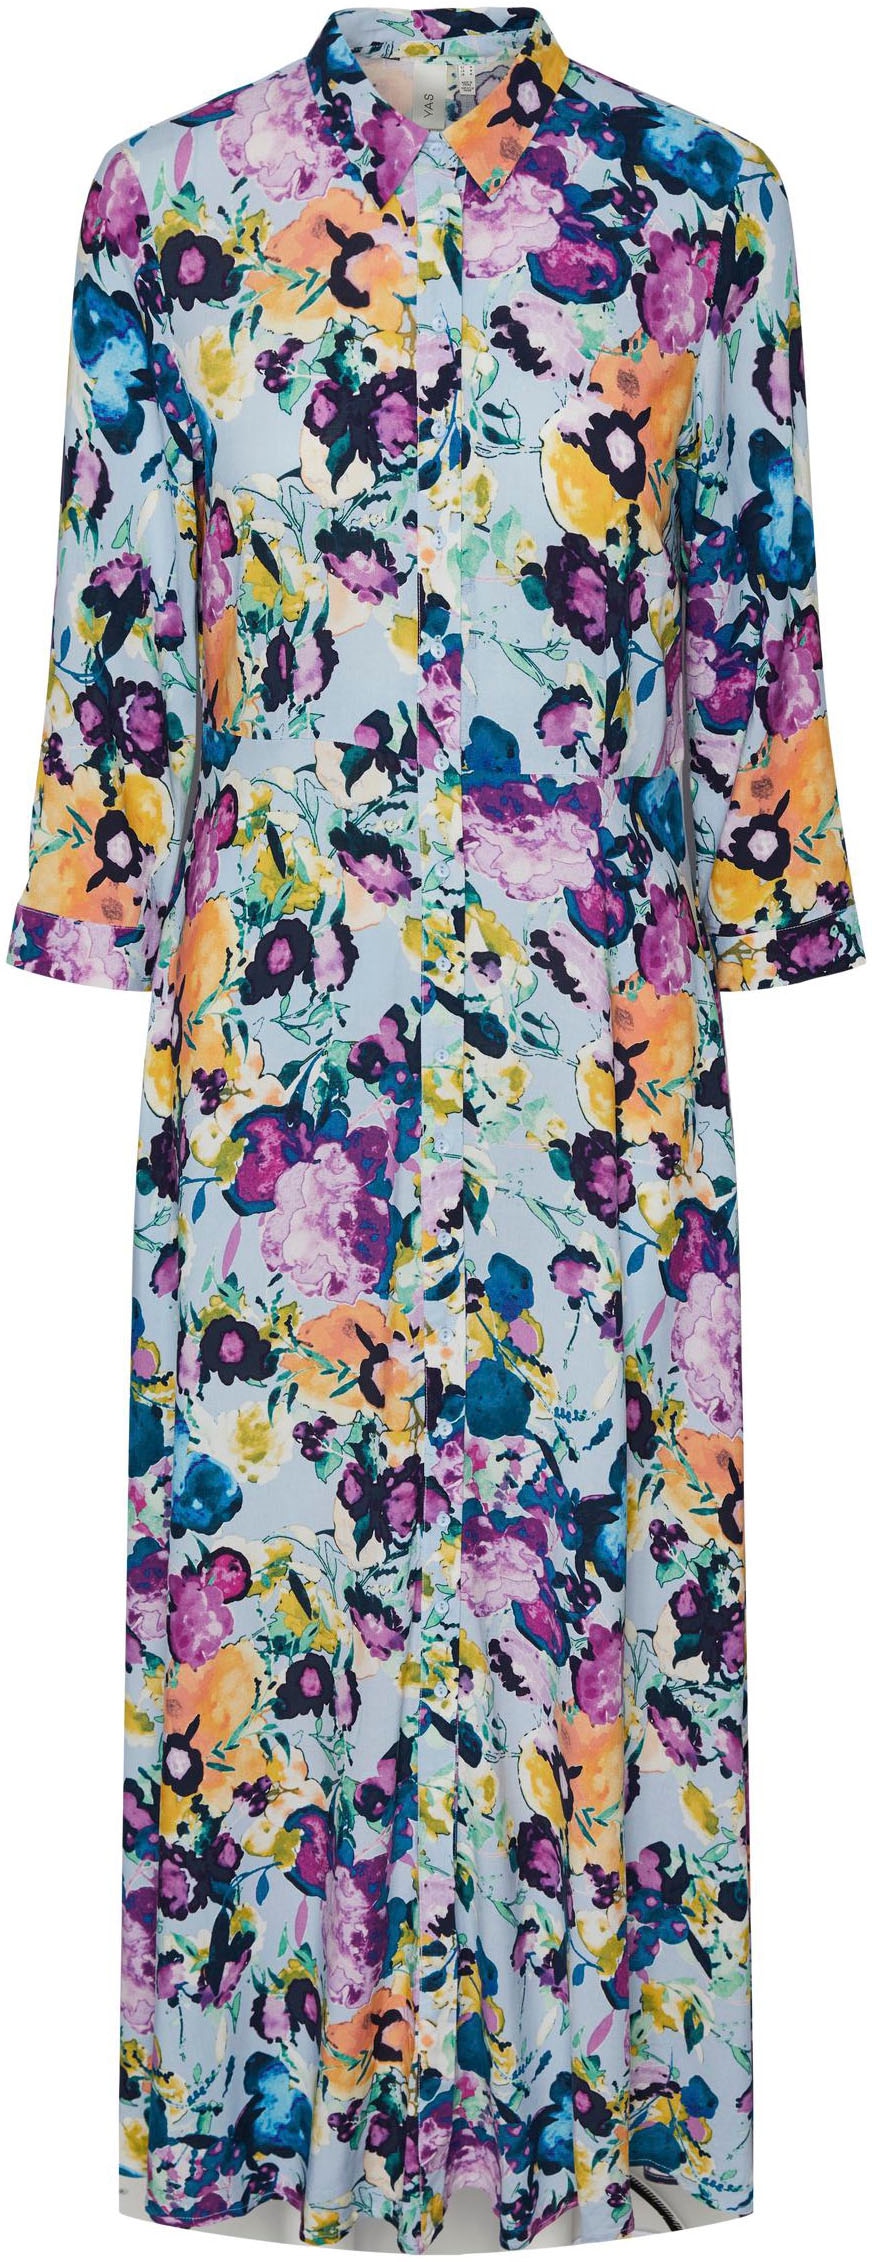 »YASSAVANNA OTTO Ärmel LONG Shop im DRESS«, 3/4 Y.A.S mit SHIRT kaufen Hemdblusenkleid Online